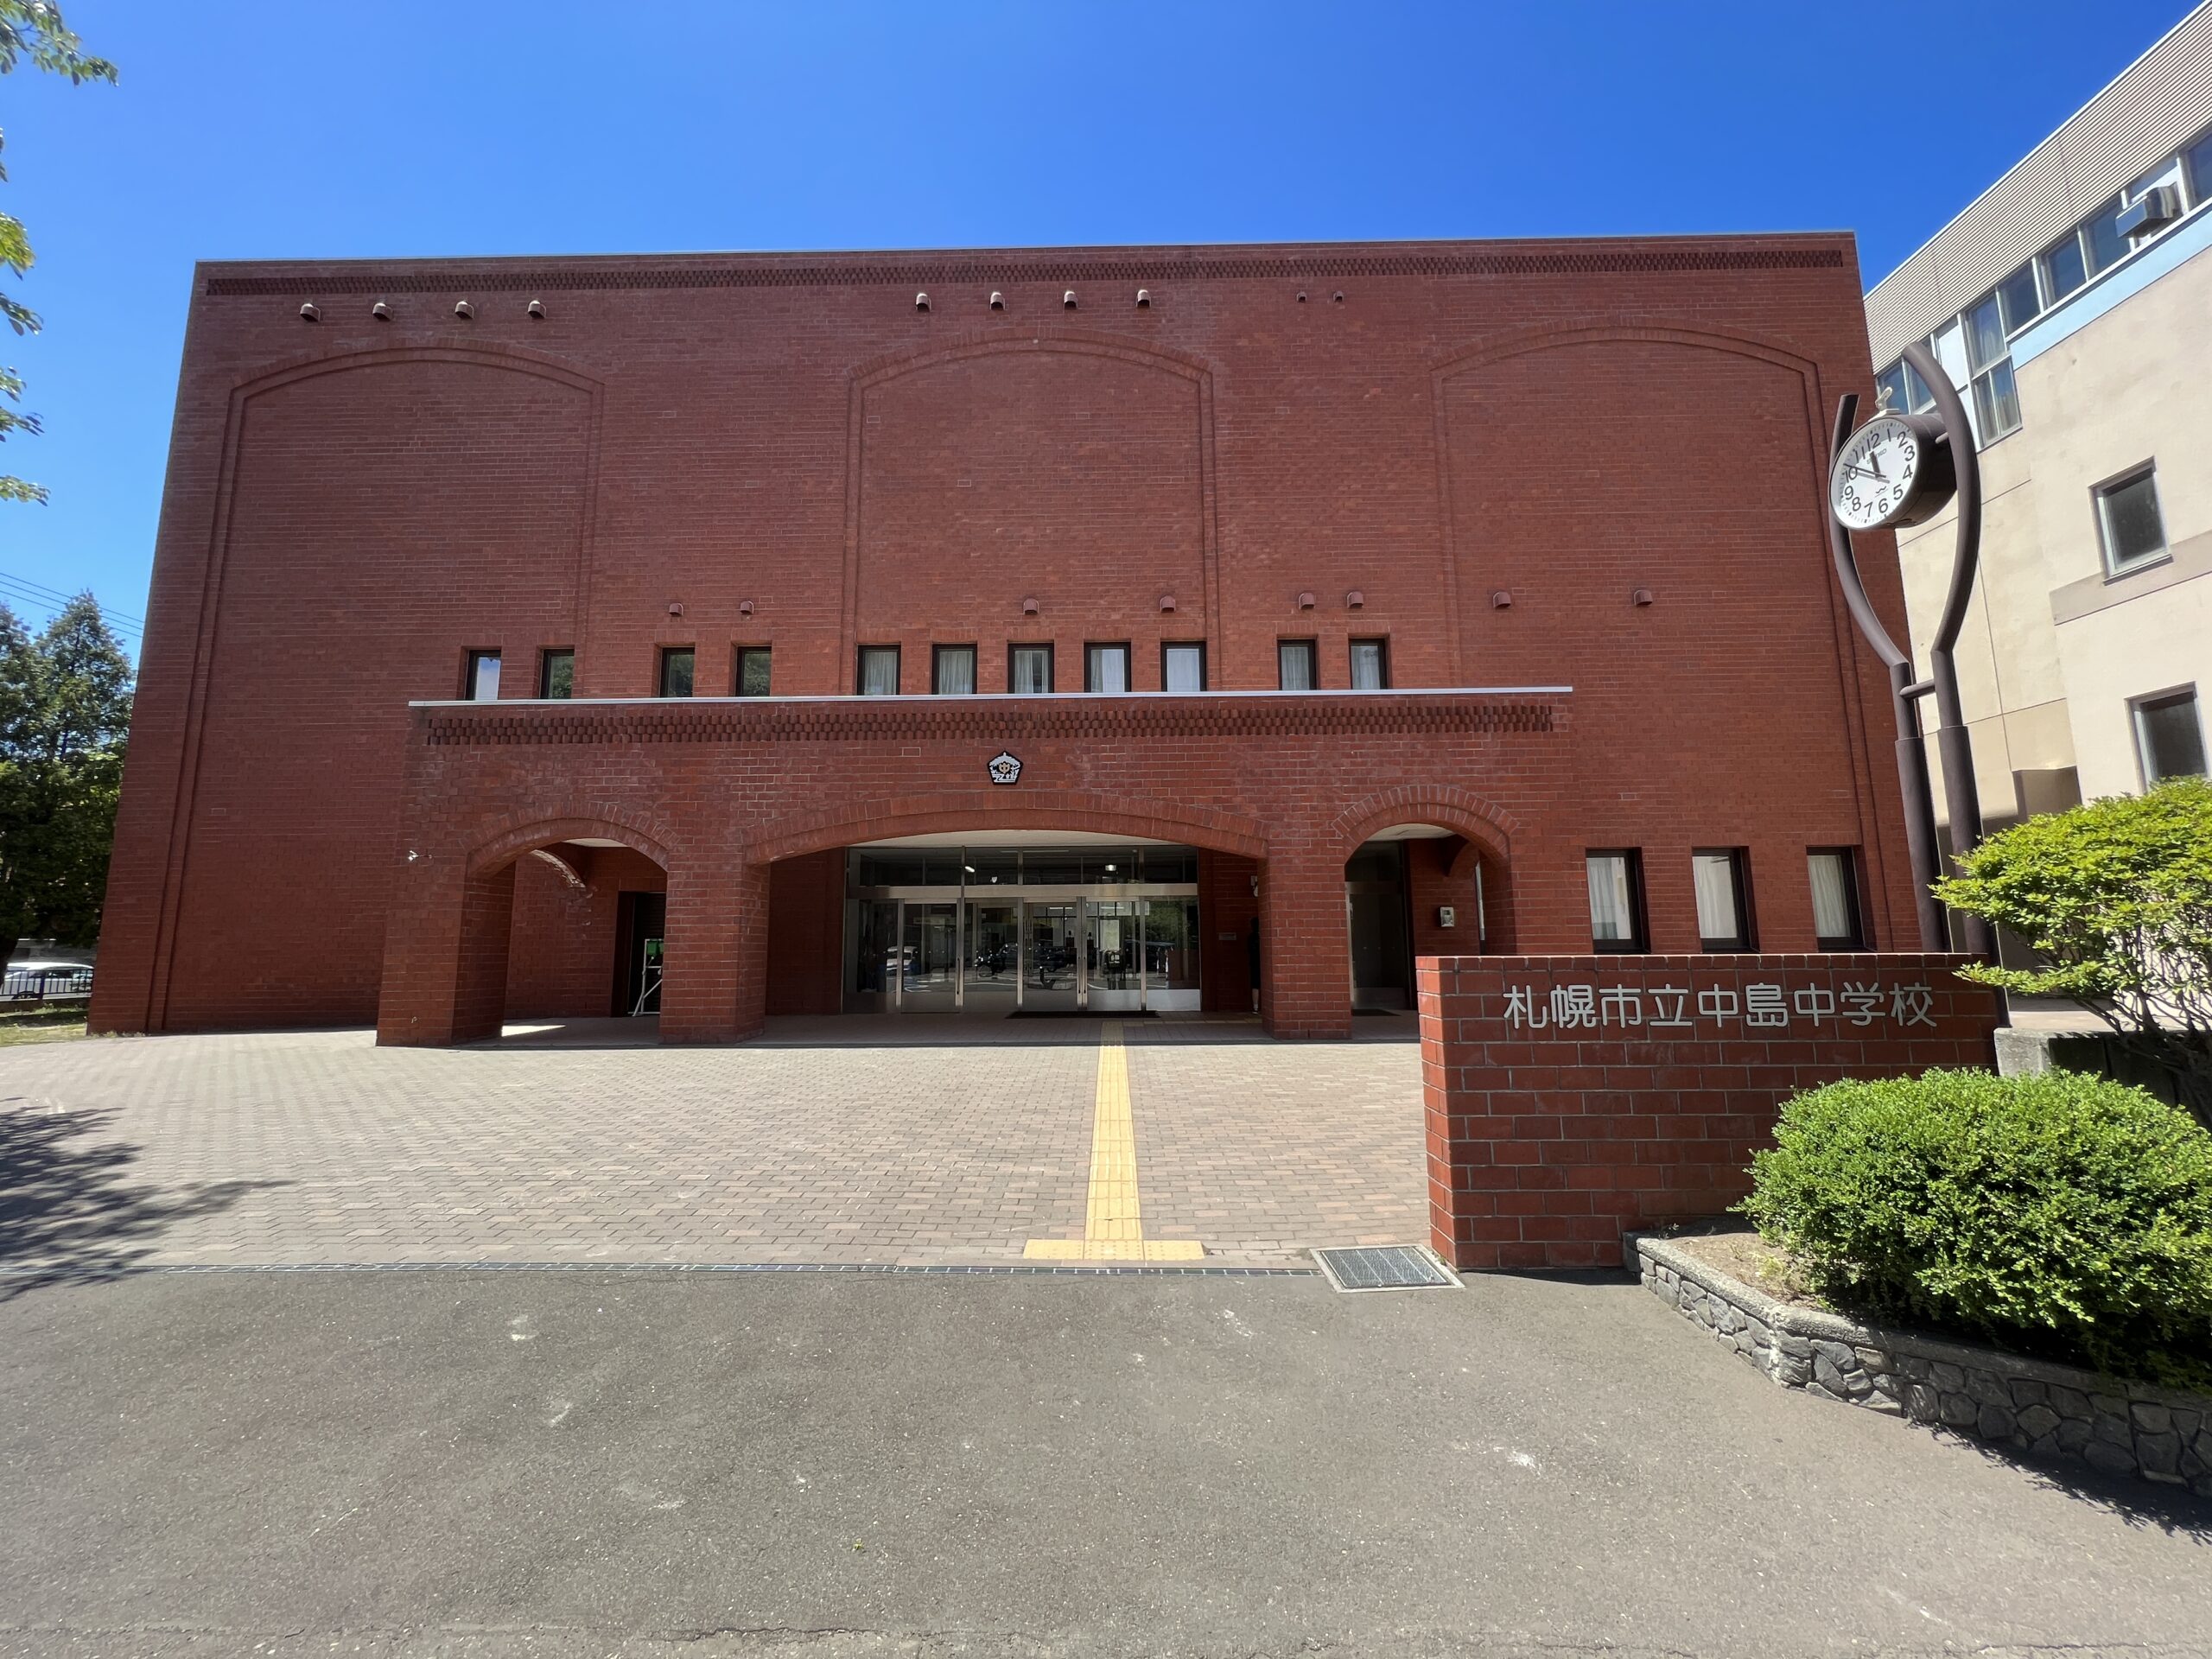 札幌市立中島中学校